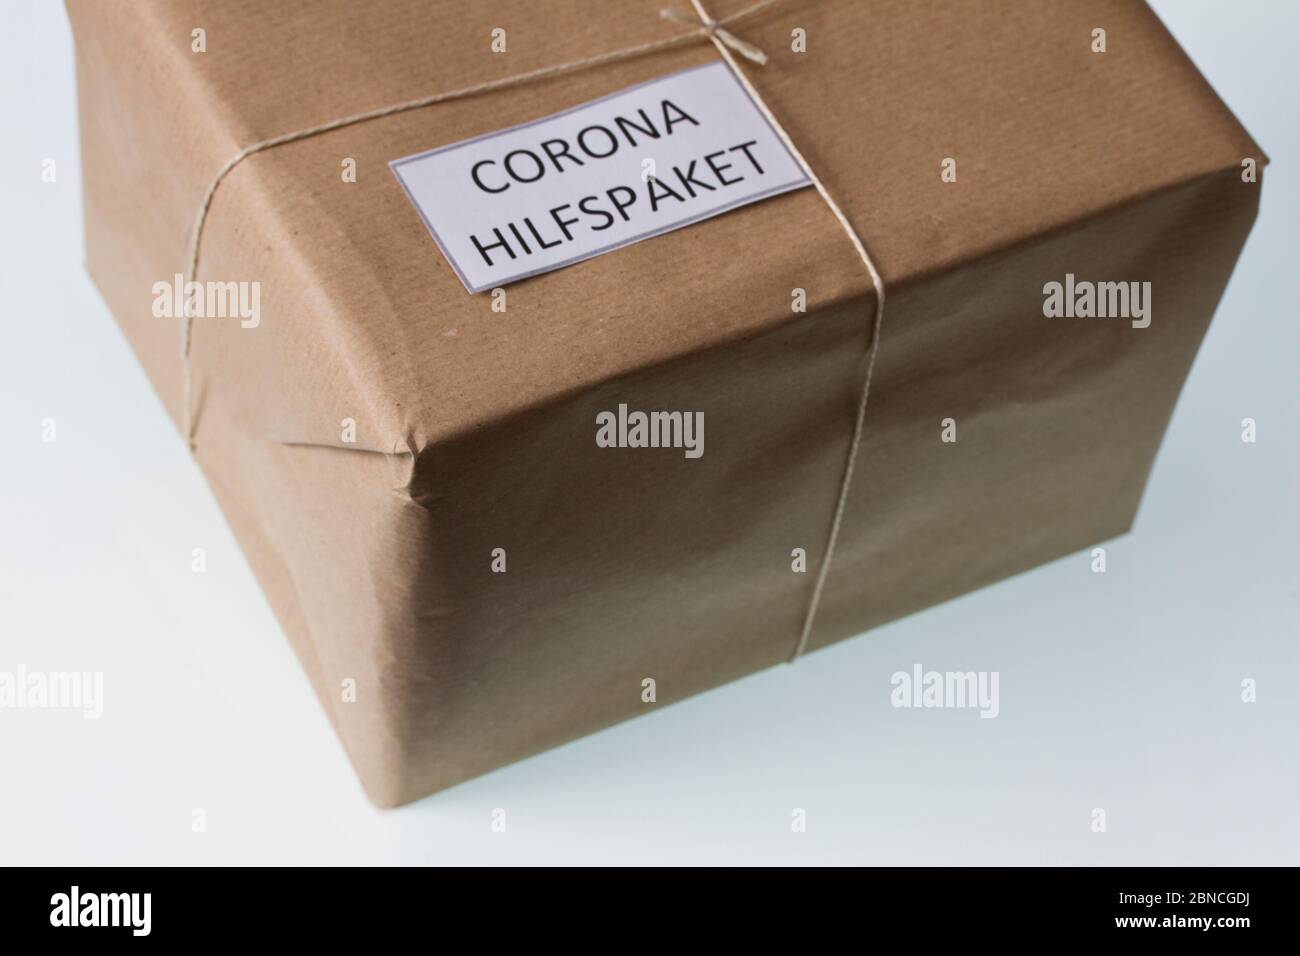 Corona Hilfspaket Stock Photo